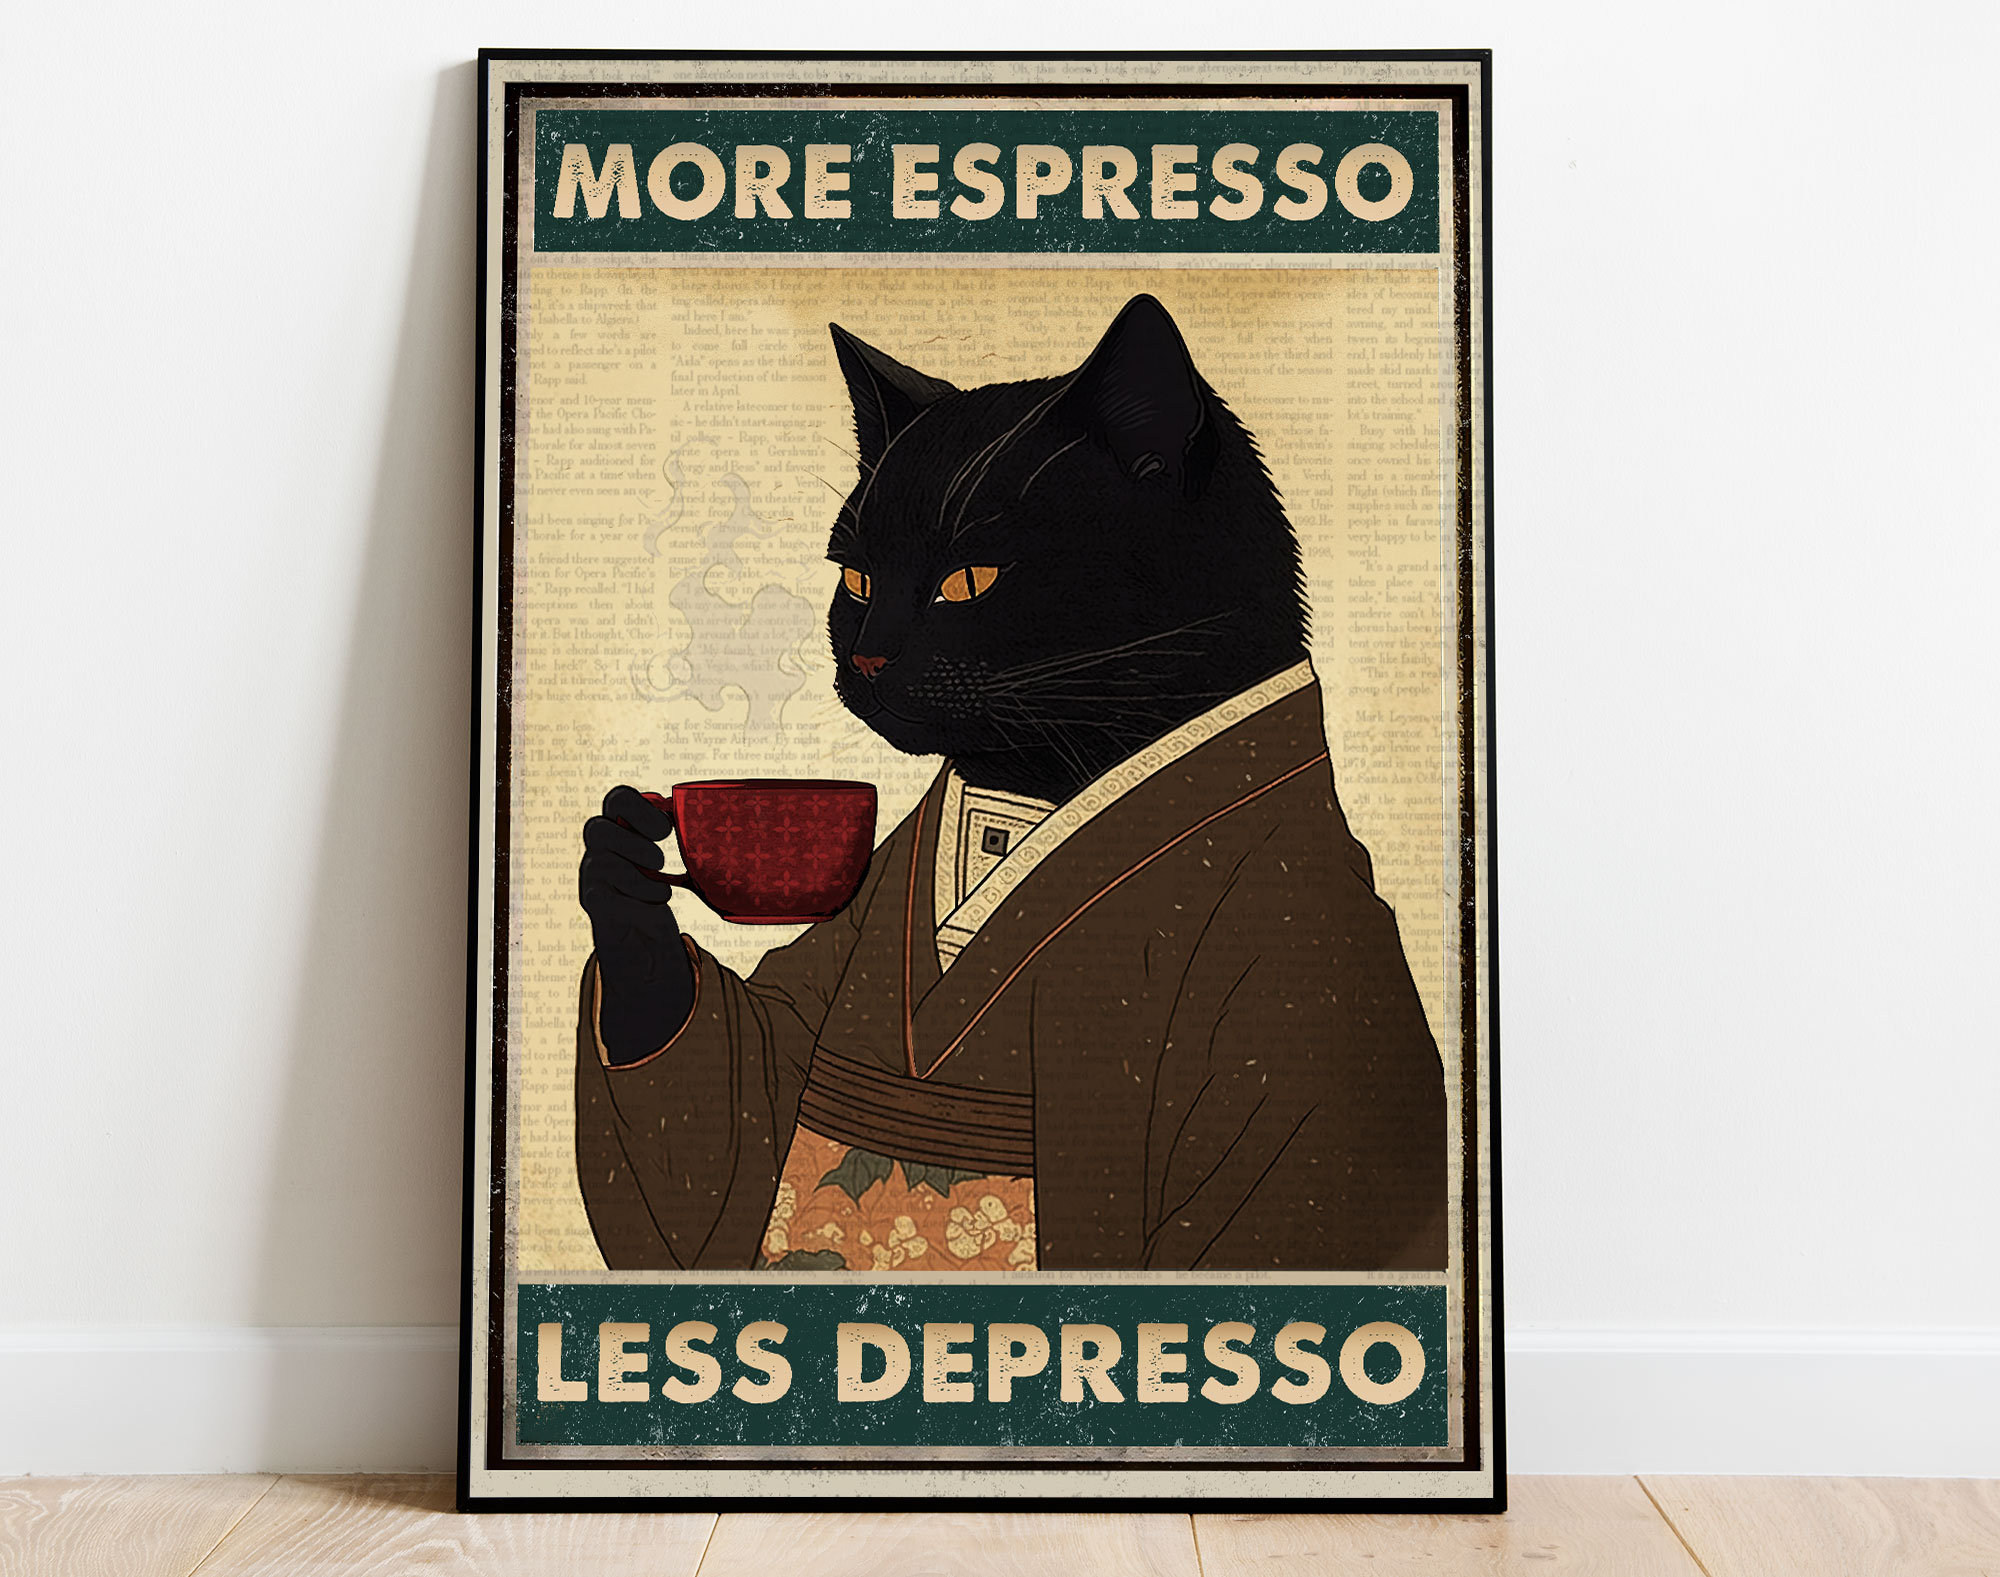 Vintage schwarze Katze Kaffee Poster, mehr Espresso weniger Depresso Poster,  trinkende Katze Poster, Kaffee-Liebhaber-Geschenk, schwarze Katze Kunst,  Katze Home Decor